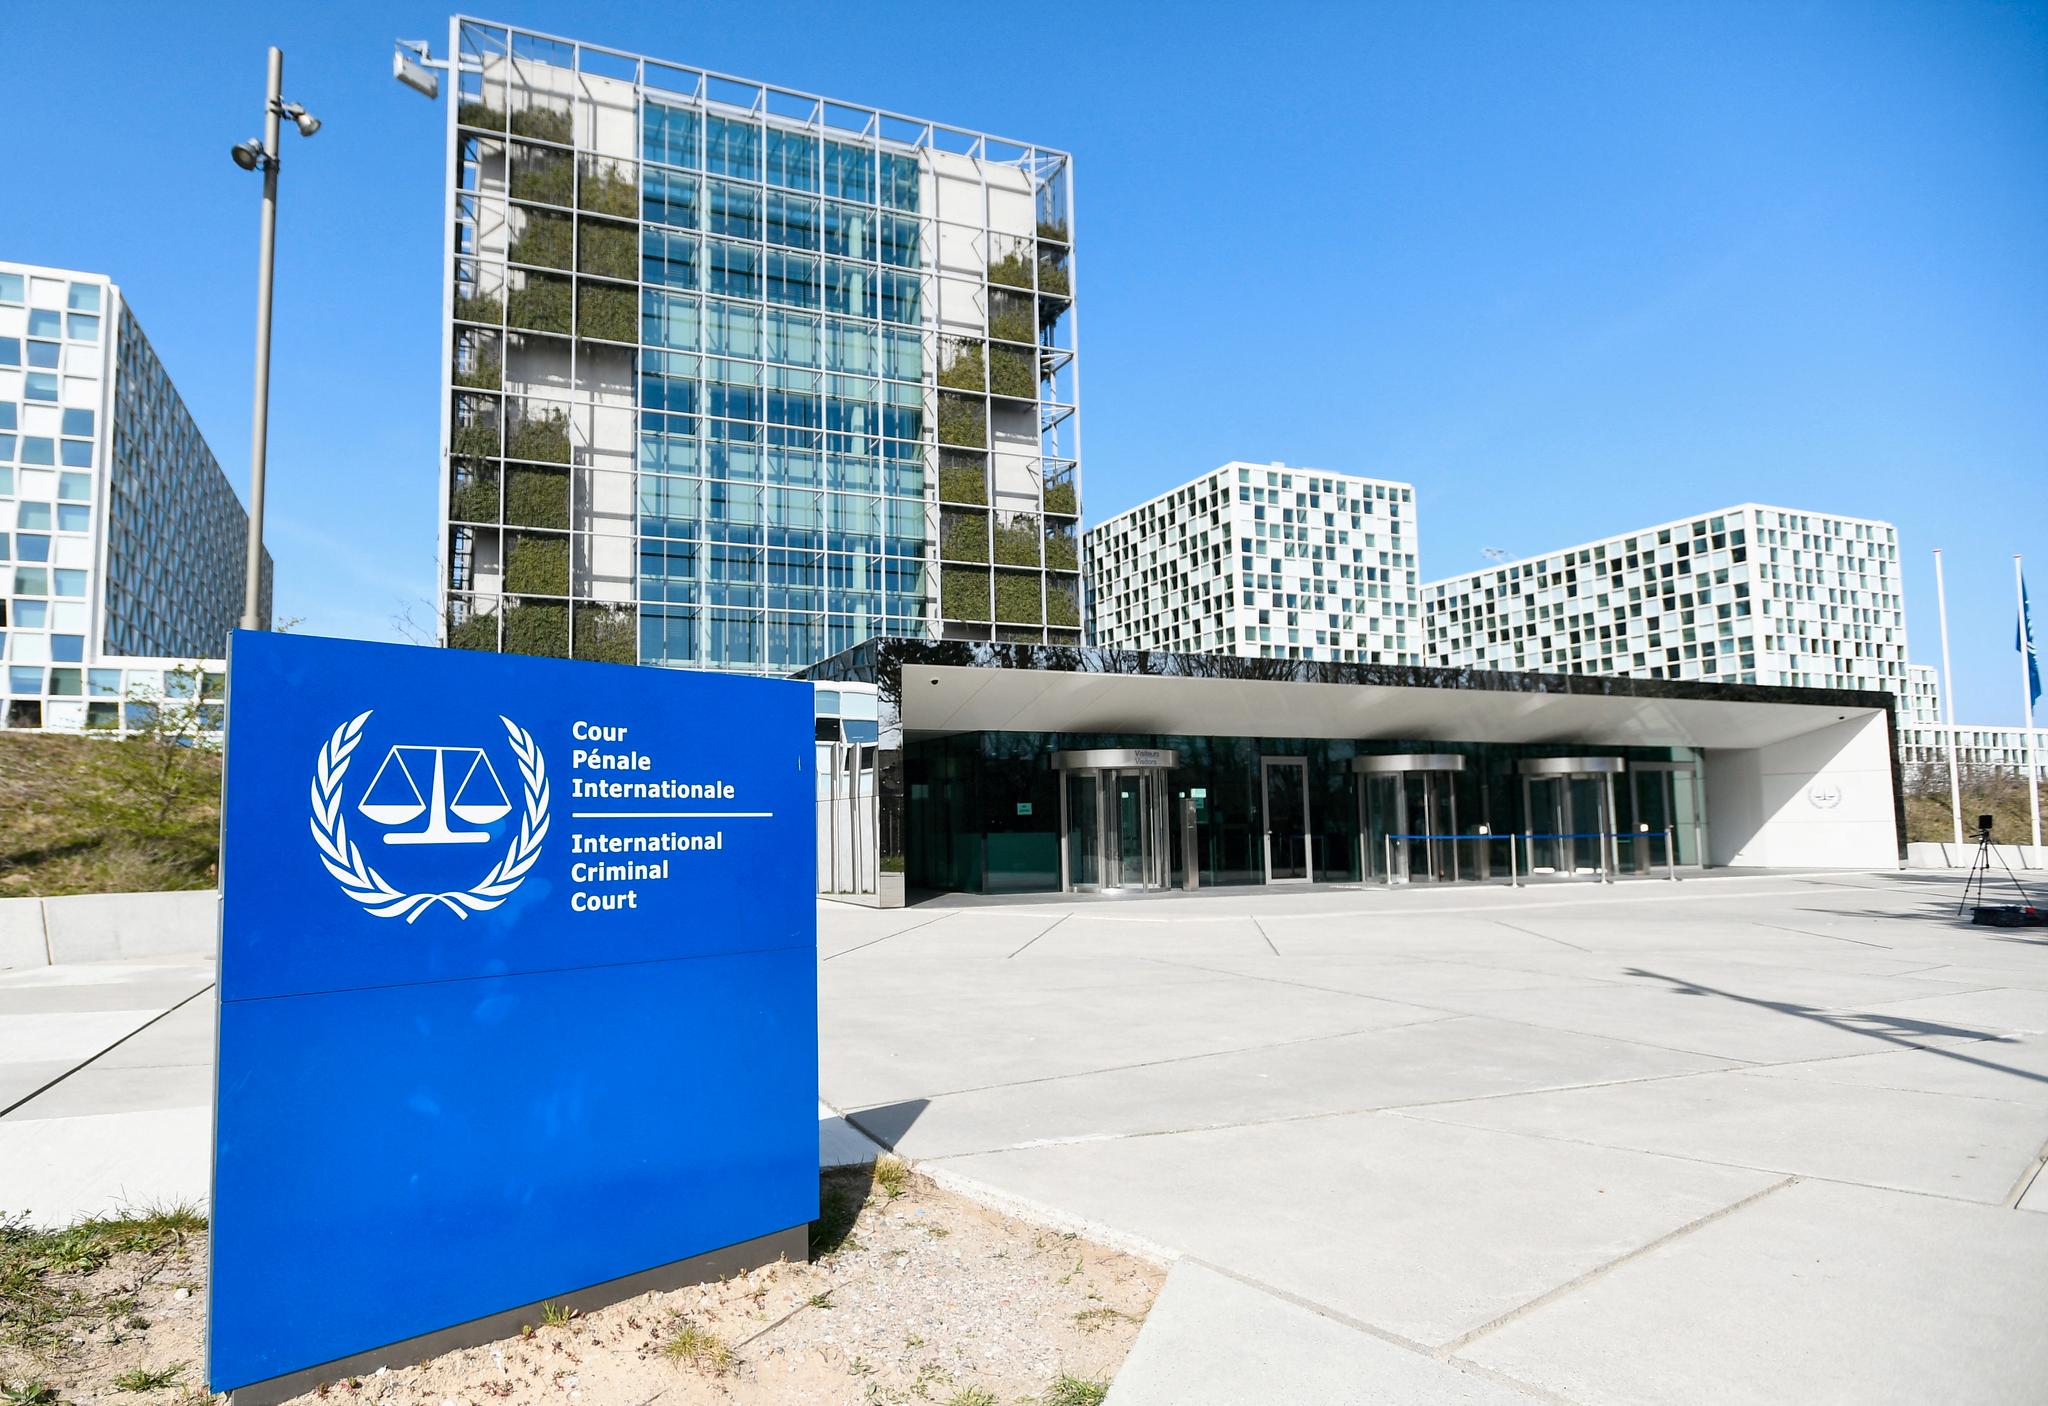 Den internasjonale straffedomstolen (ICC) holder til i denne bygningen i Haag i Nederland.